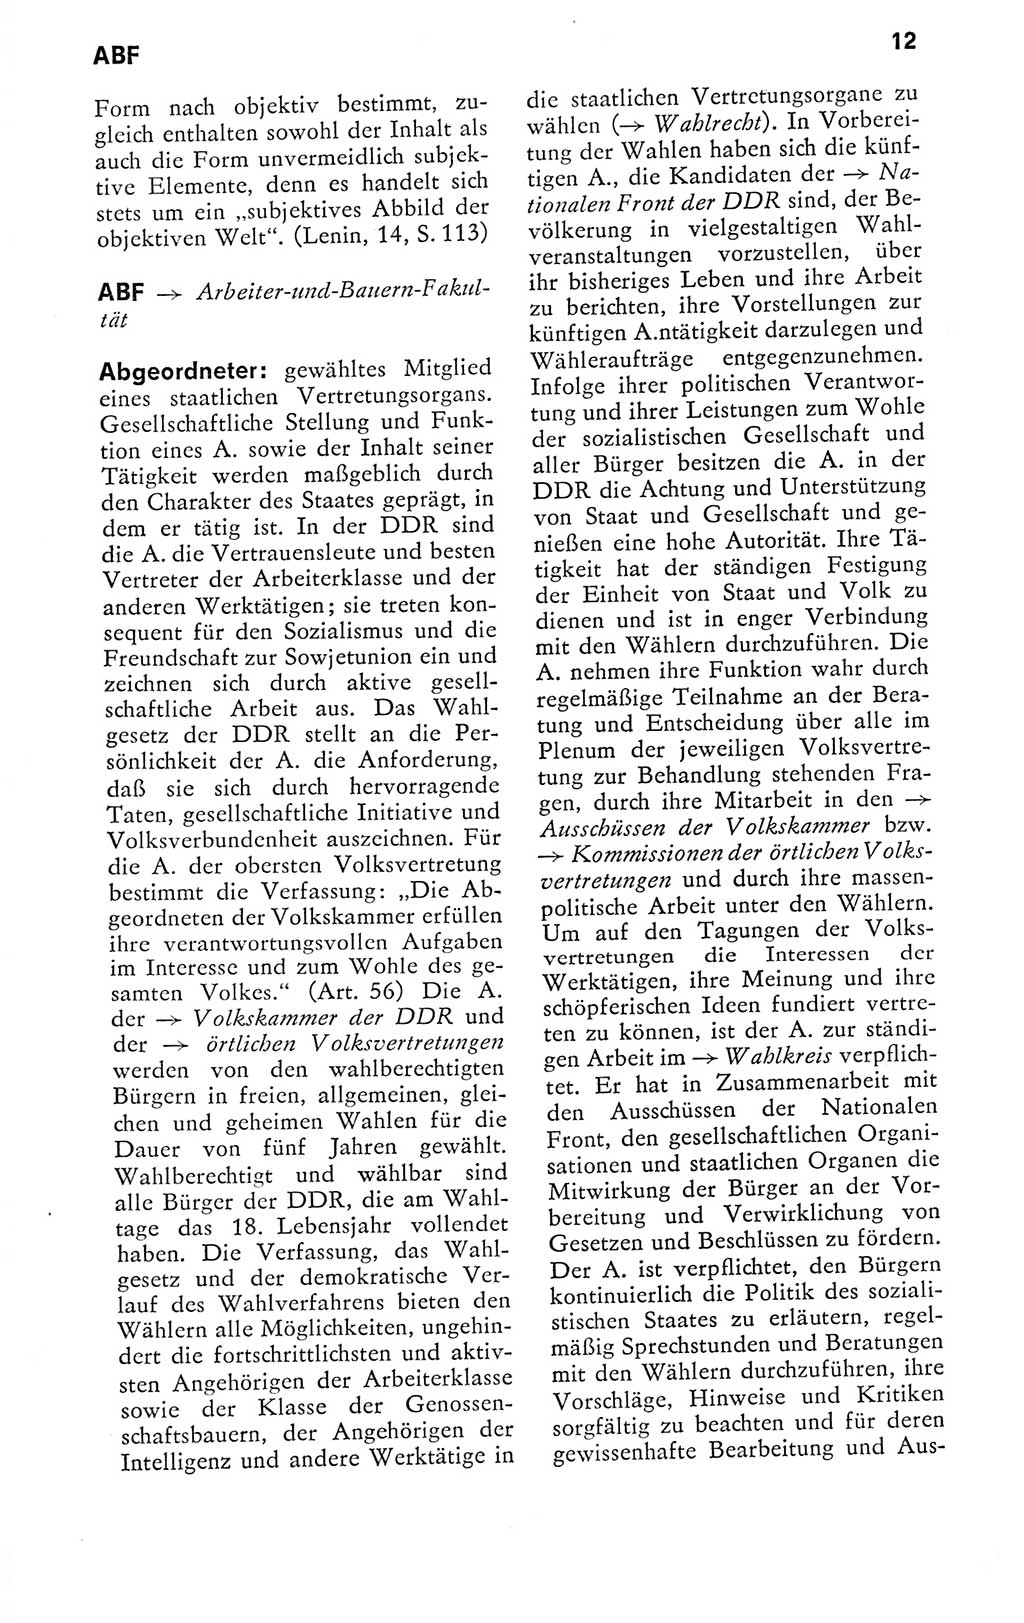 Kleines politisches Wörterbuch [Deutsche Demokratische Republik (DDR)] 1978, Seite 12 (Kl. pol. Wb. DDR 1978, S. 12)